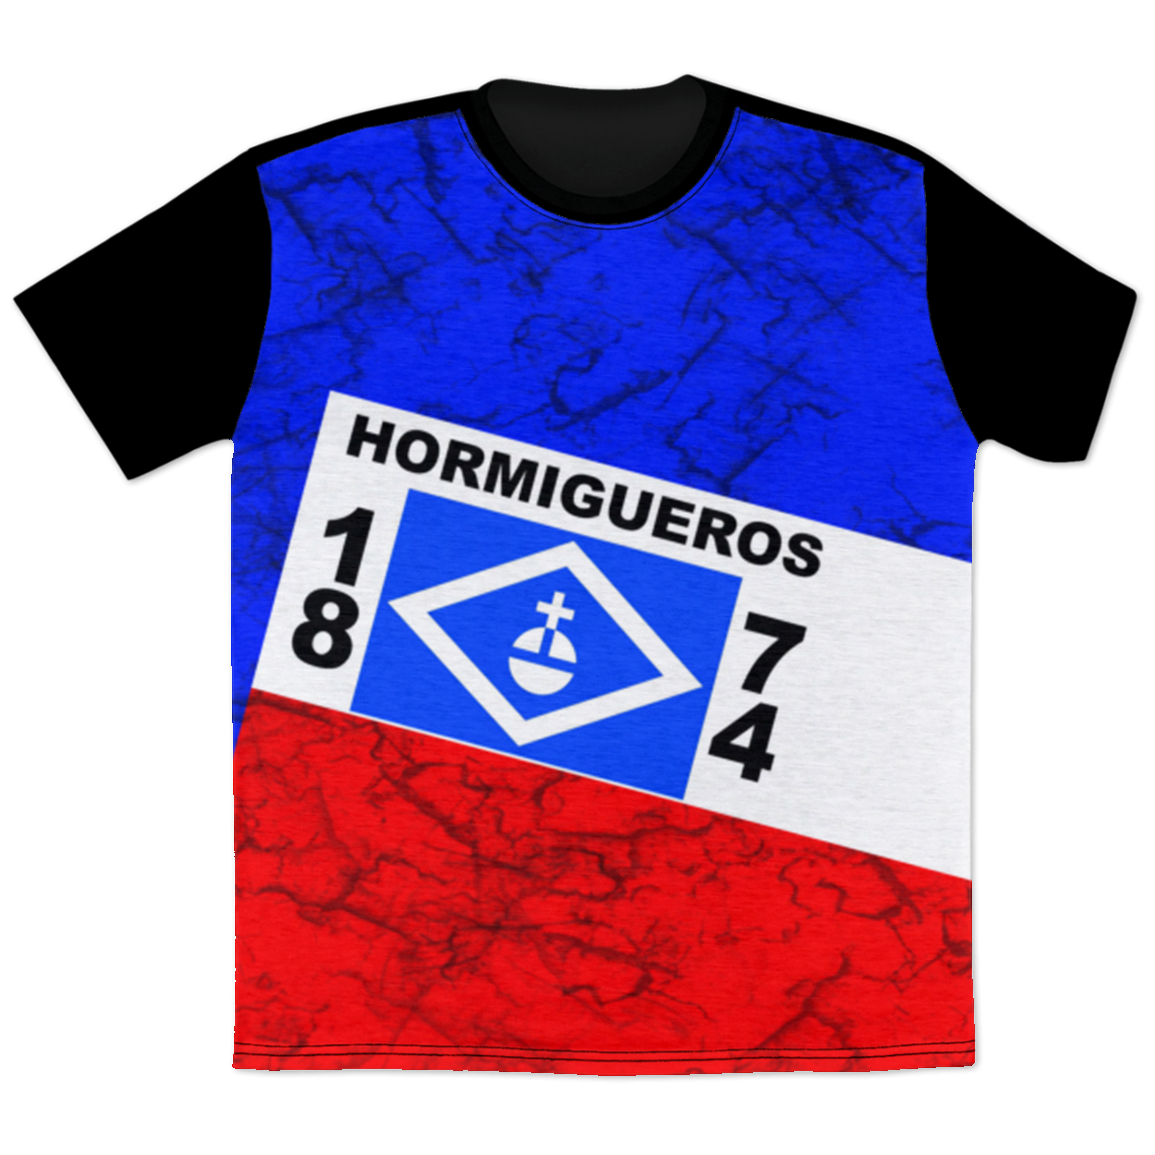 Hormigueros T-Shirt - Puerto Rican Pride